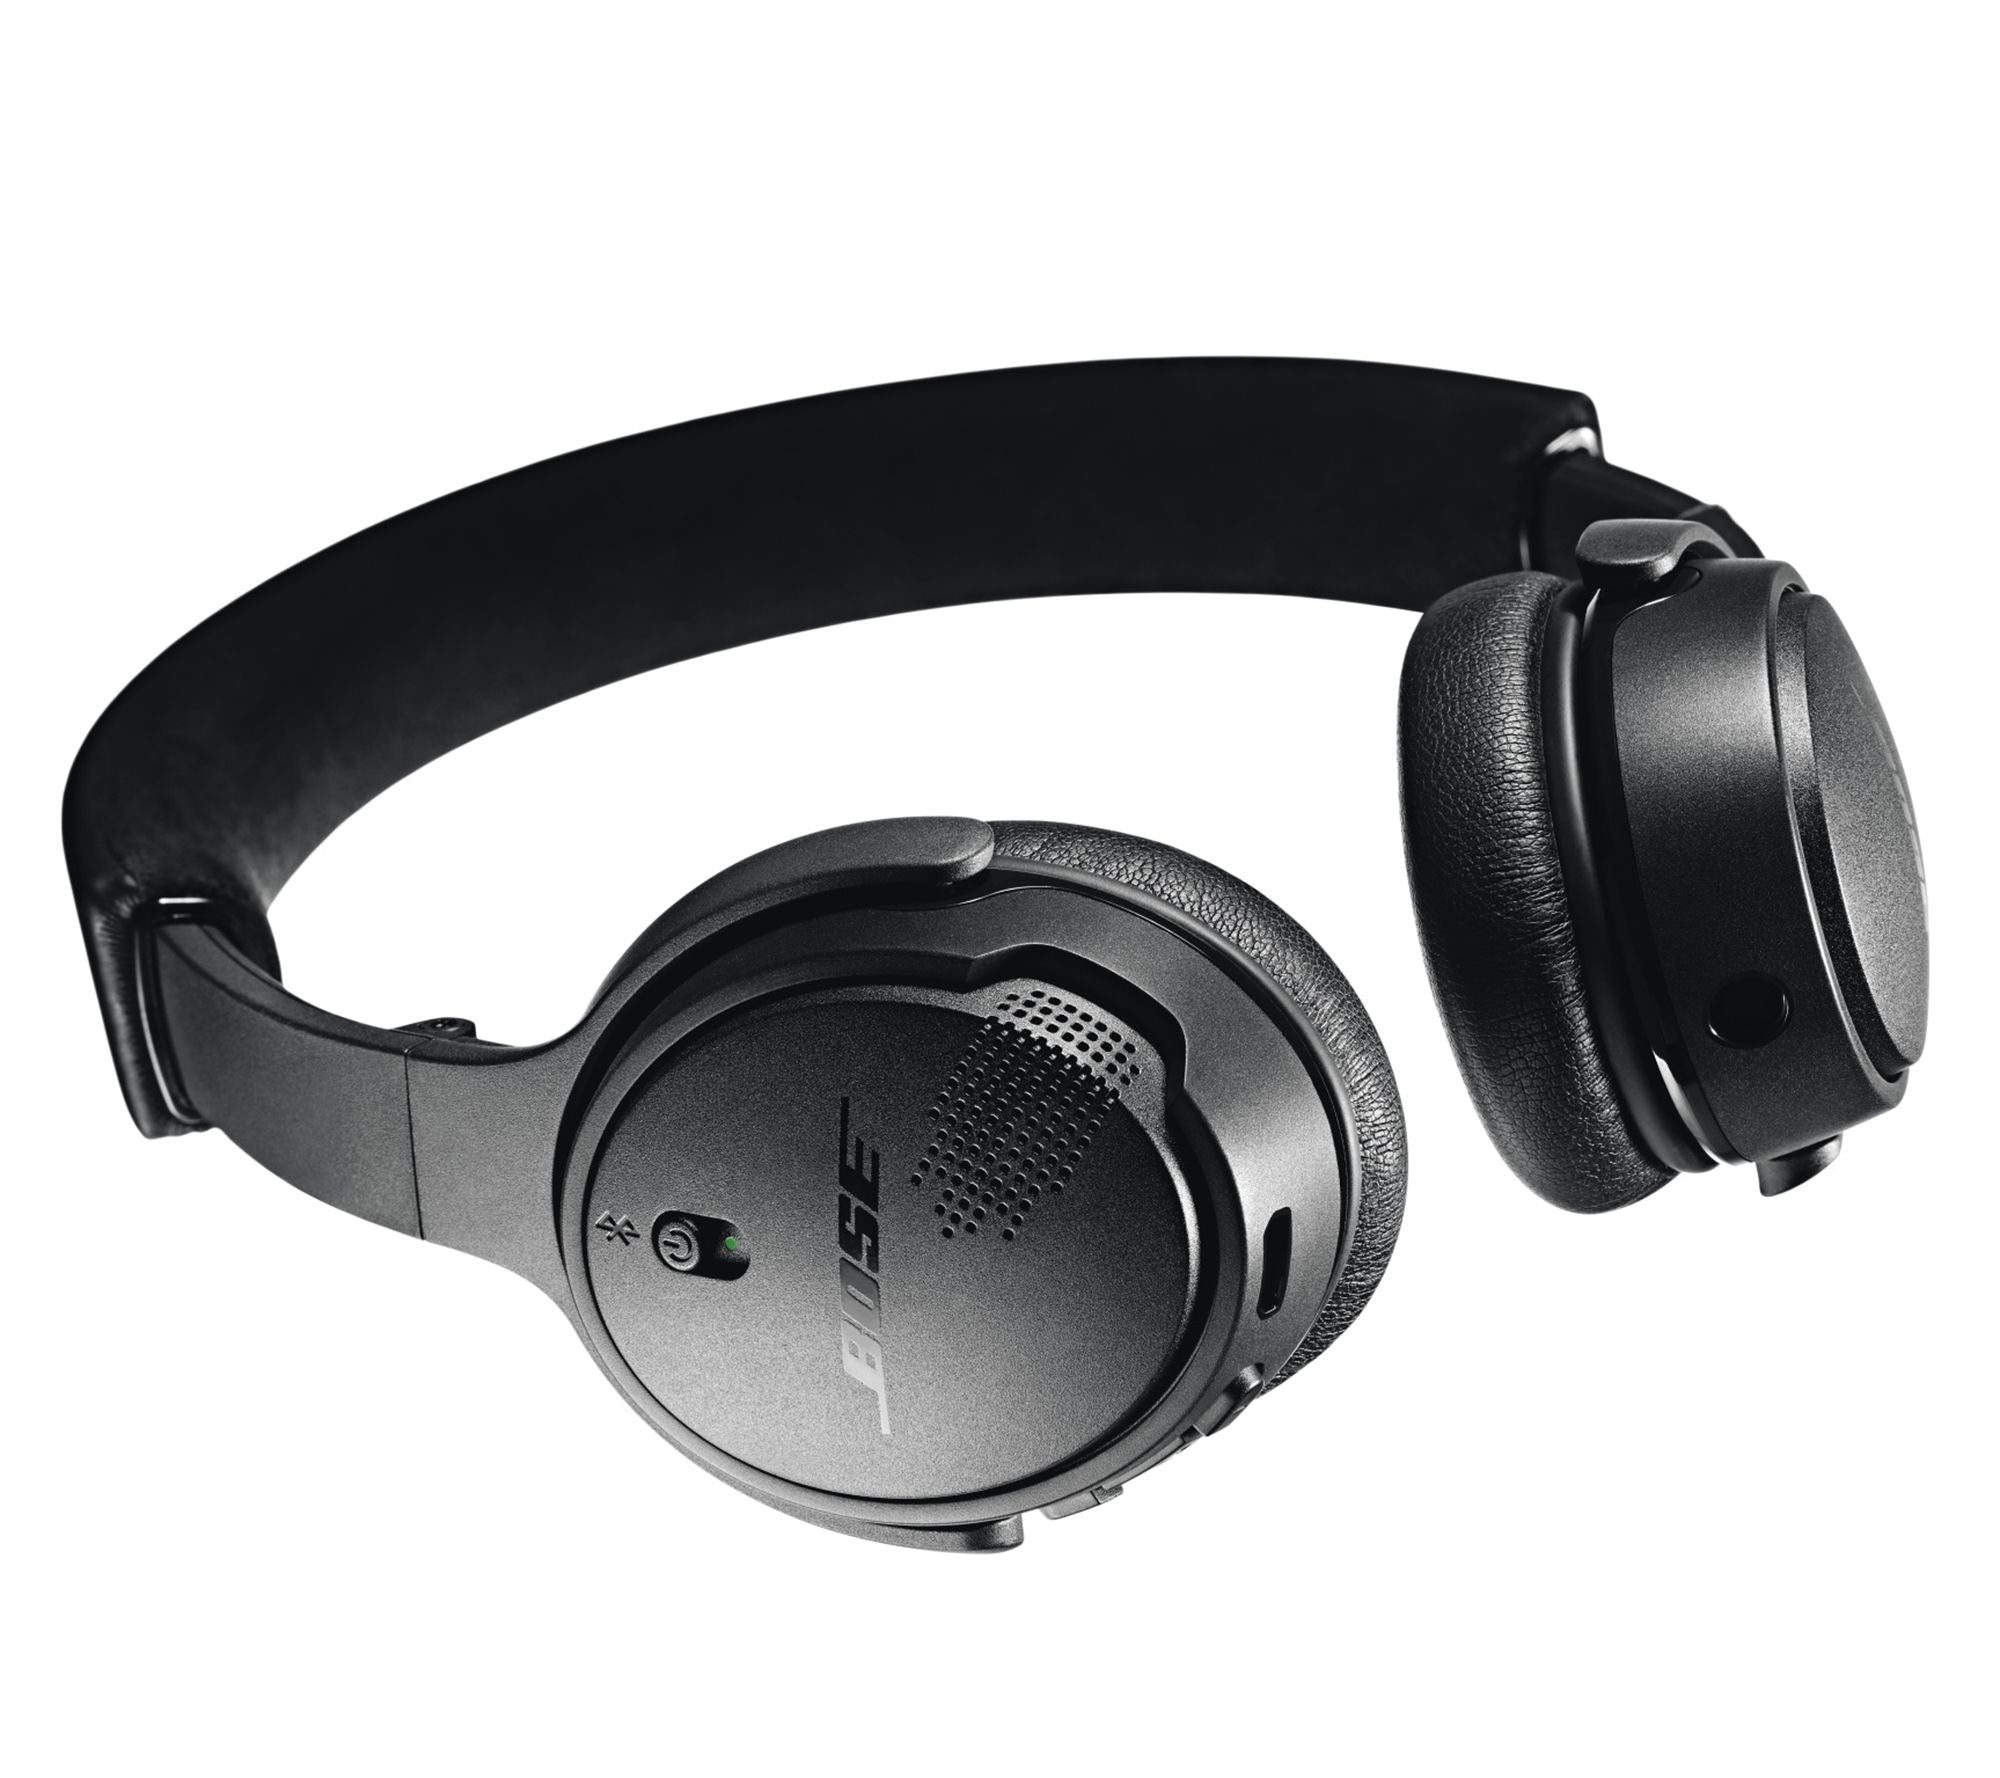 Bose Soundlink On-Ear Bluetooth Wireless Headphones Triple Black